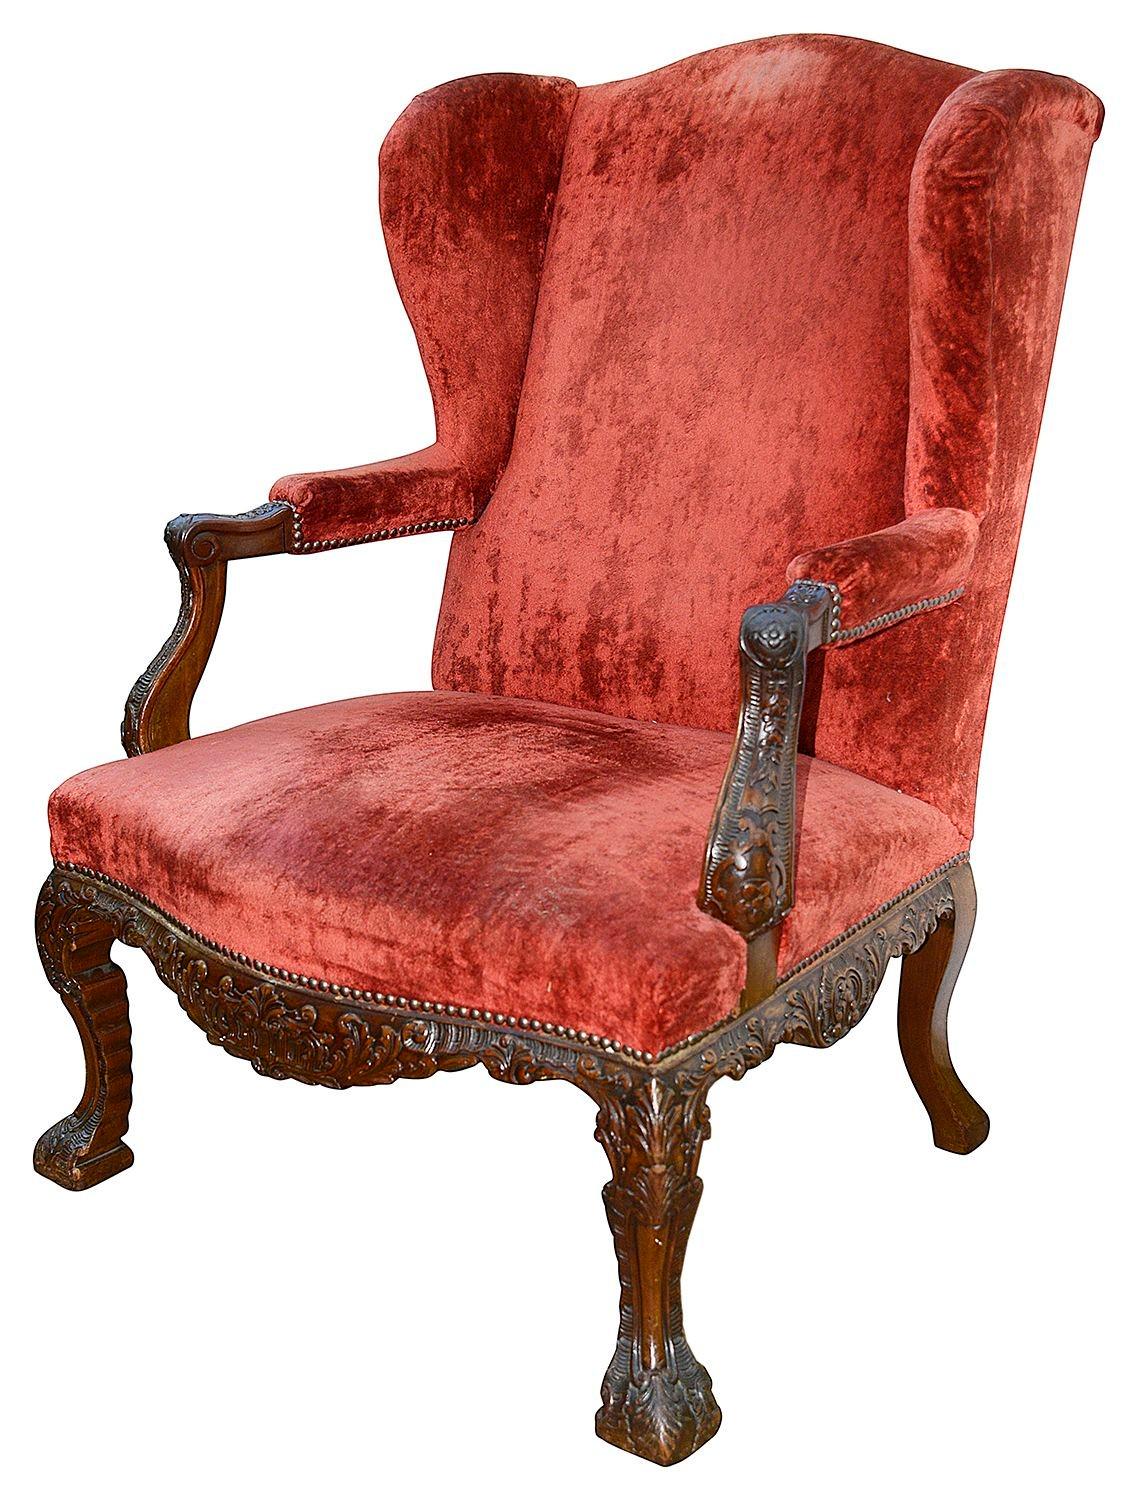 Une paire très imposante et de bonne qualité de fauteuils à bras latéraux Gainsborough en acajou de style géorgien du 18e siècle, chacun avec une fine décoration sculptée à la main sur les bras, la frise et les élégants pieds cabriole. Tapisserie en